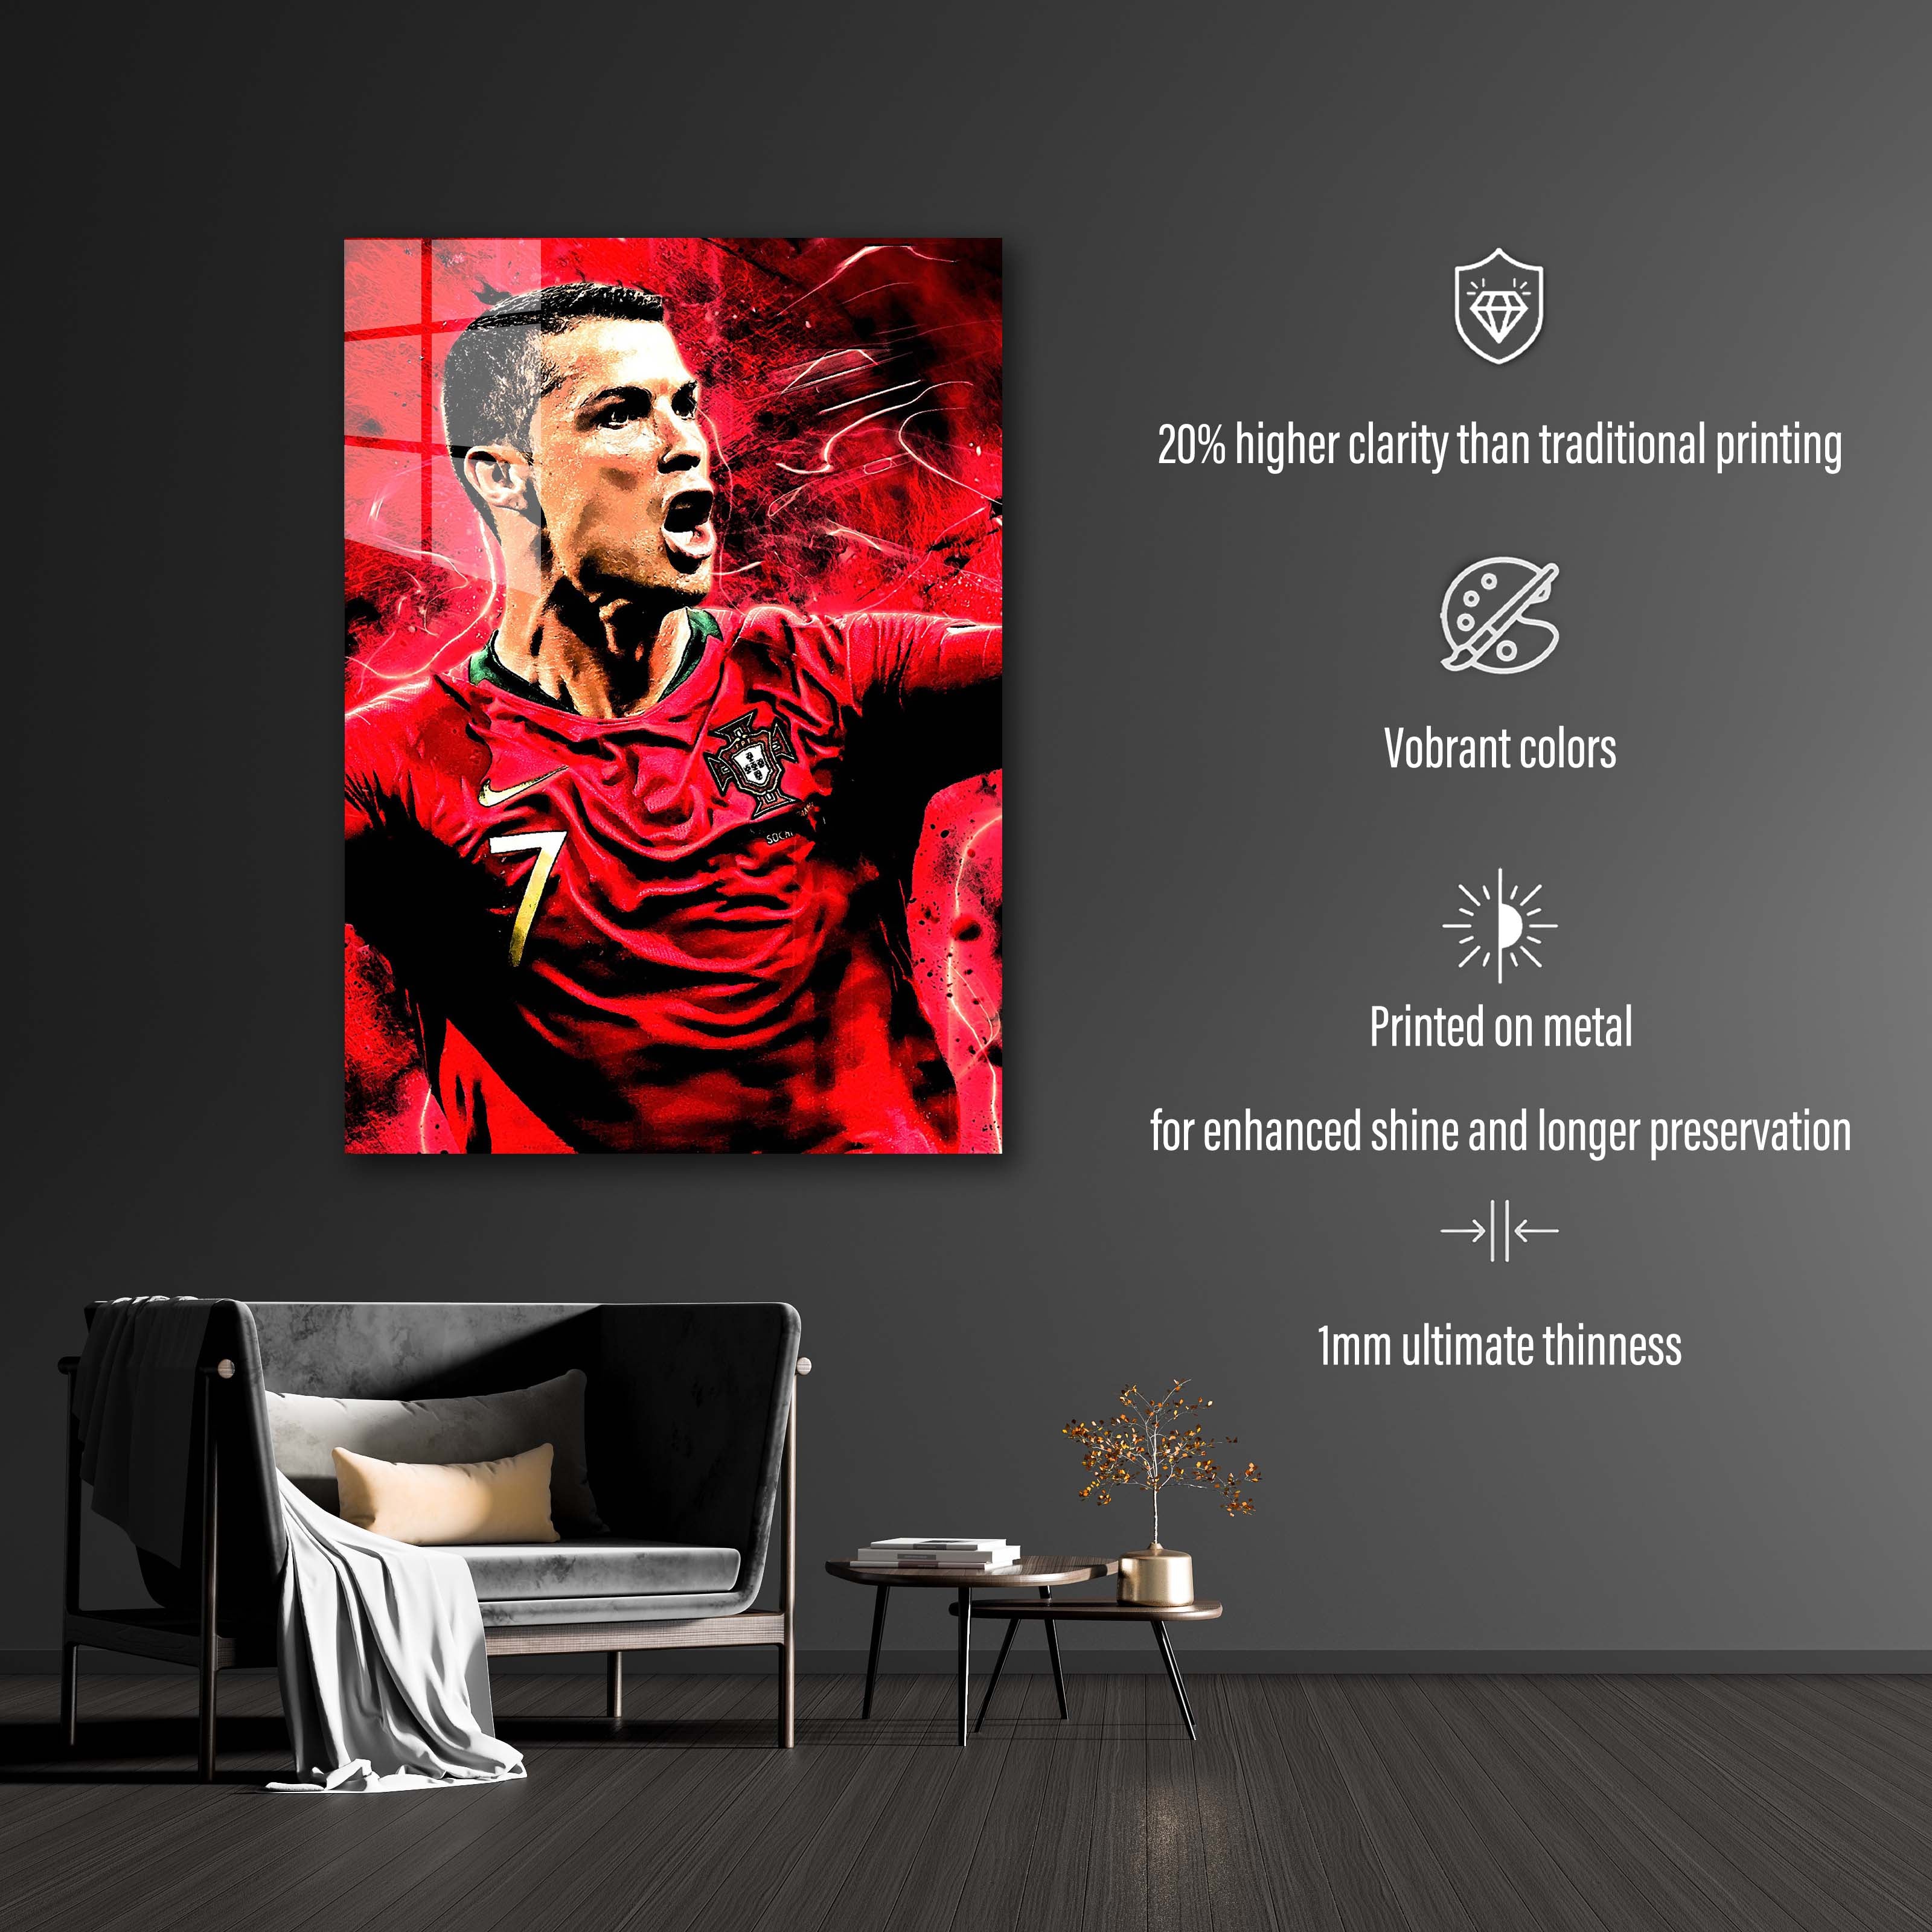 Ronaldo Cristiano Portugal-designed by @DynCreative